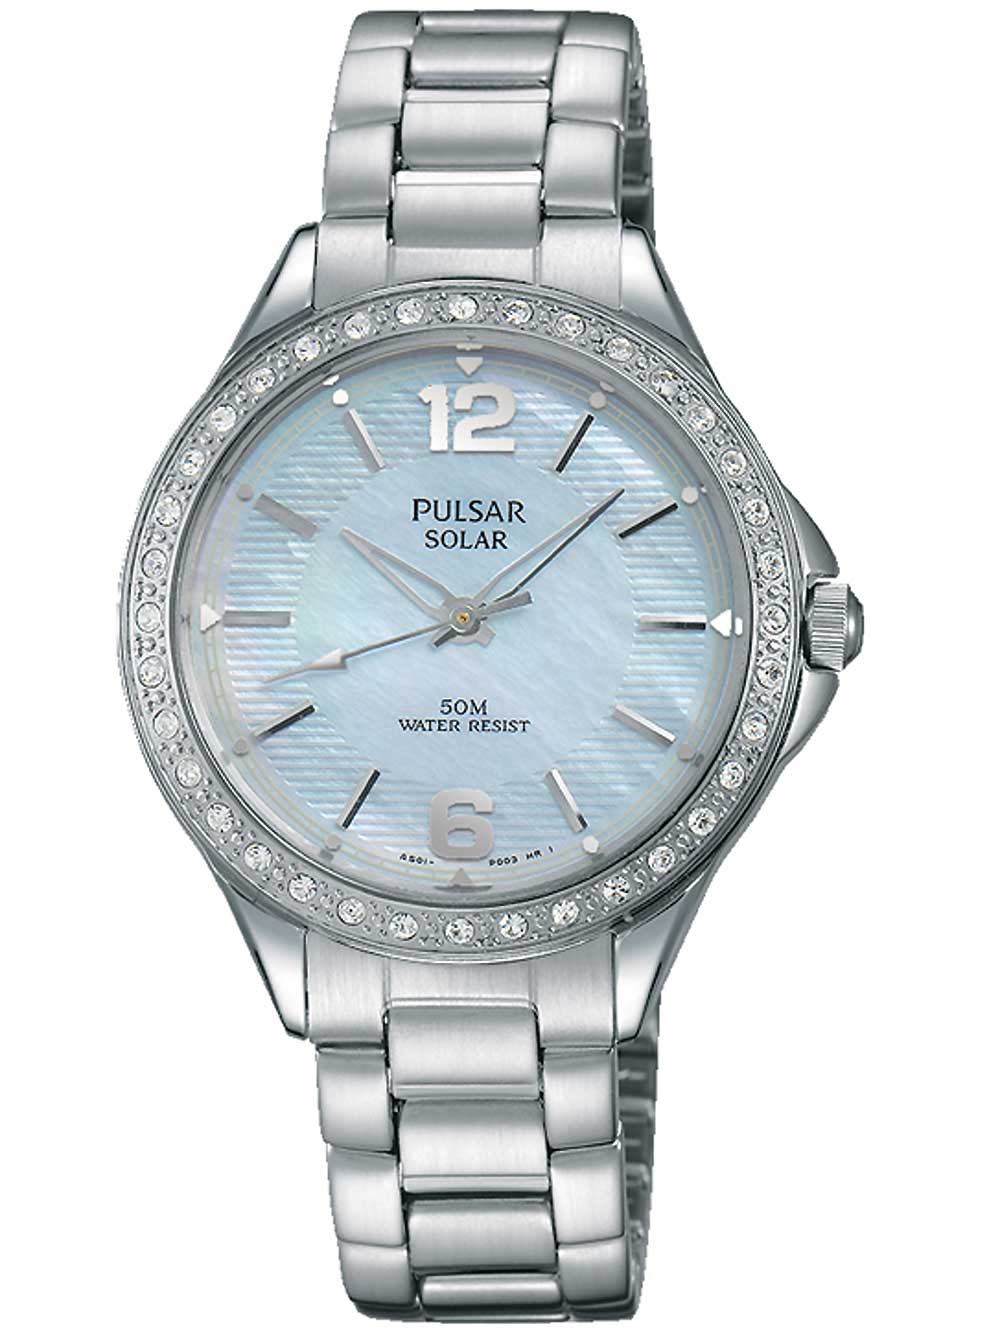 Pulsar PY5009X1 solar watch ladies with Swarovski 32mm 5ATM